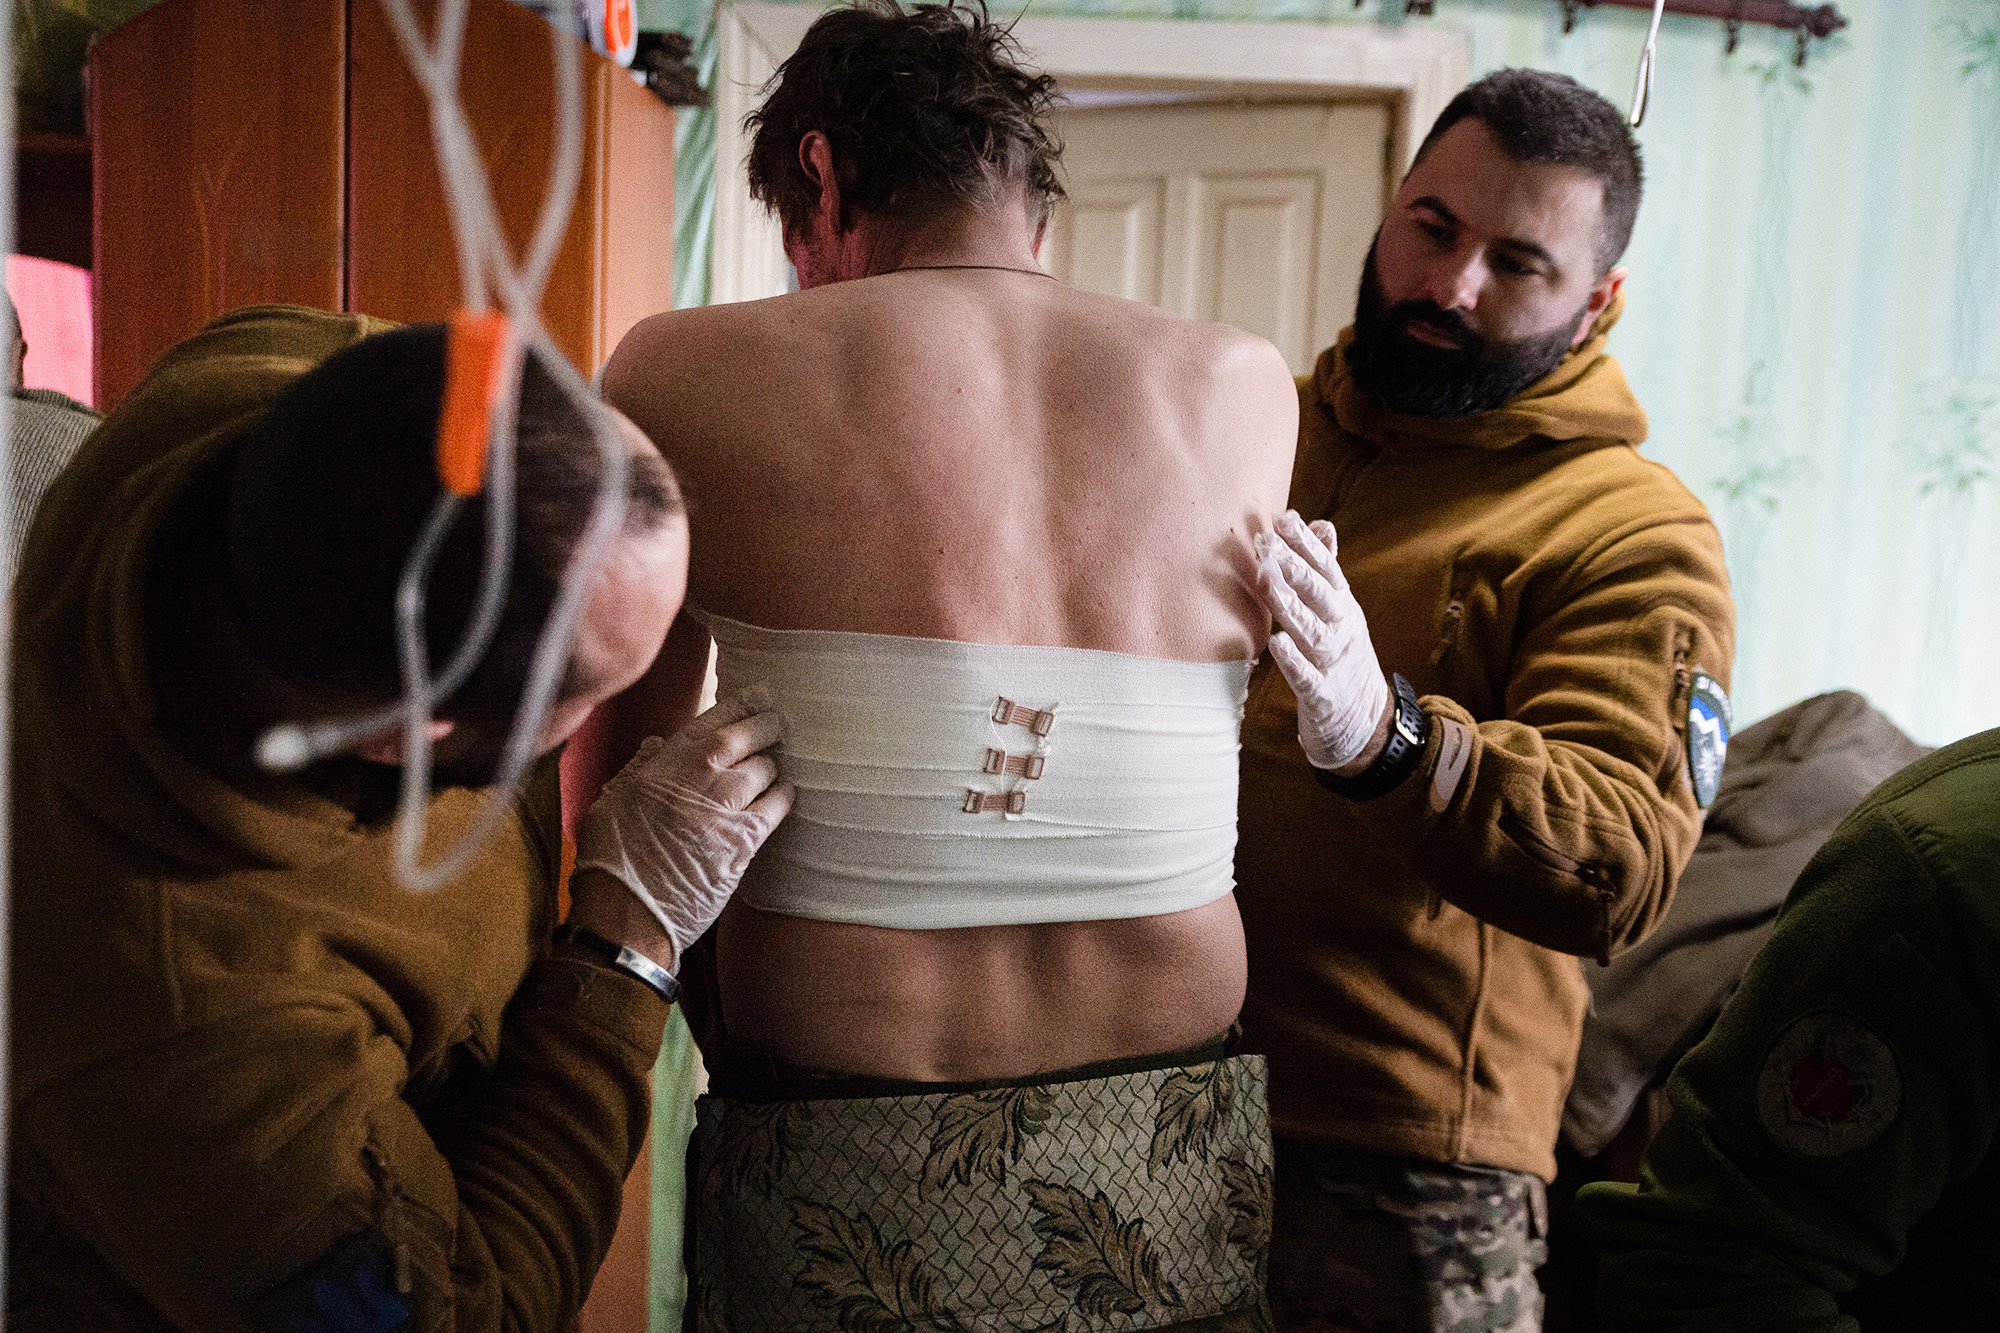 Ukraine, bandaged man